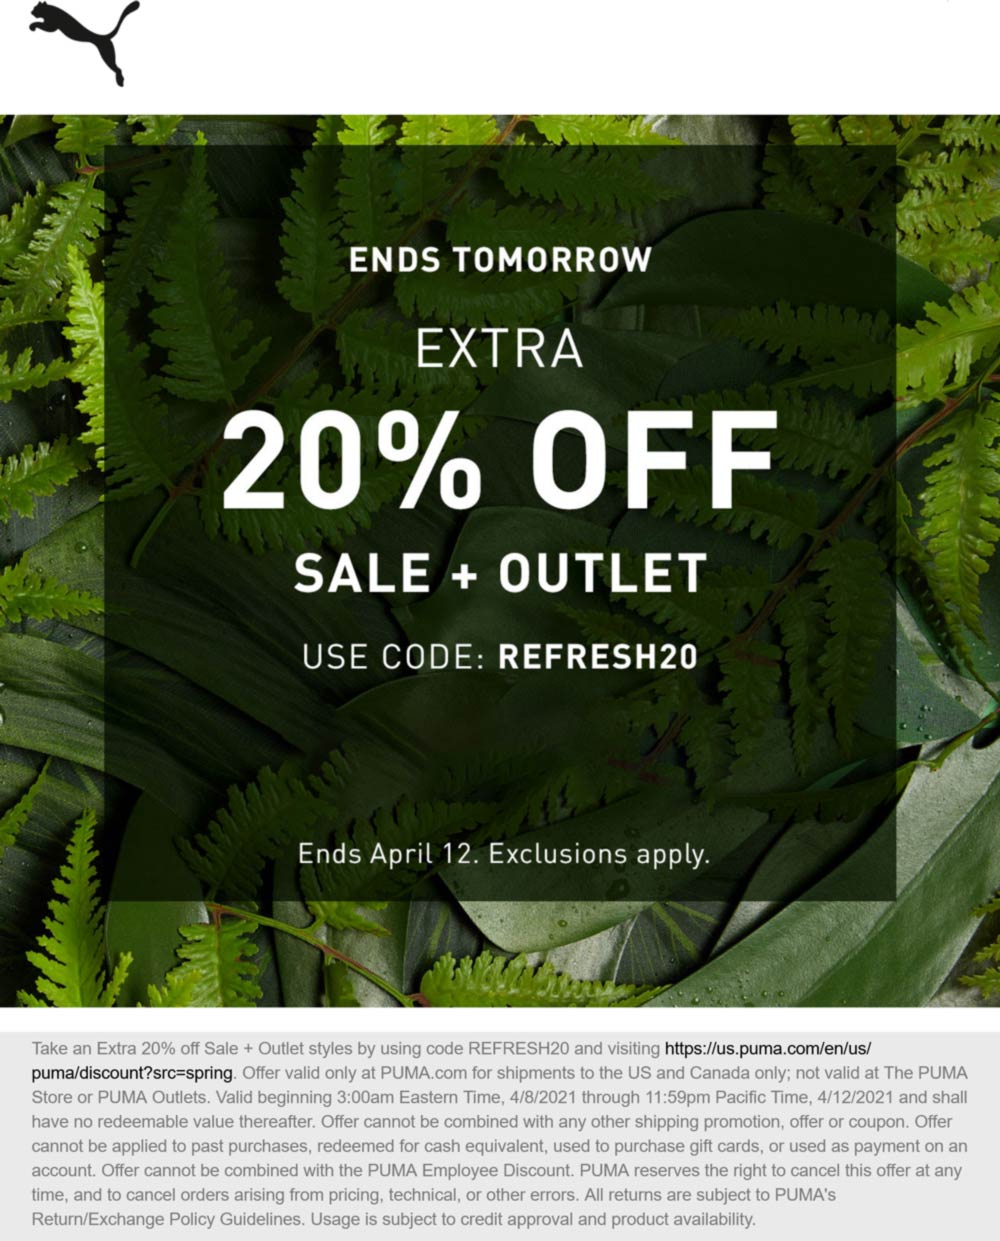 PUMA stores Coupon  Extra 20% off sale & outlet items at PUMA via promo code REFRESH20 #puma 